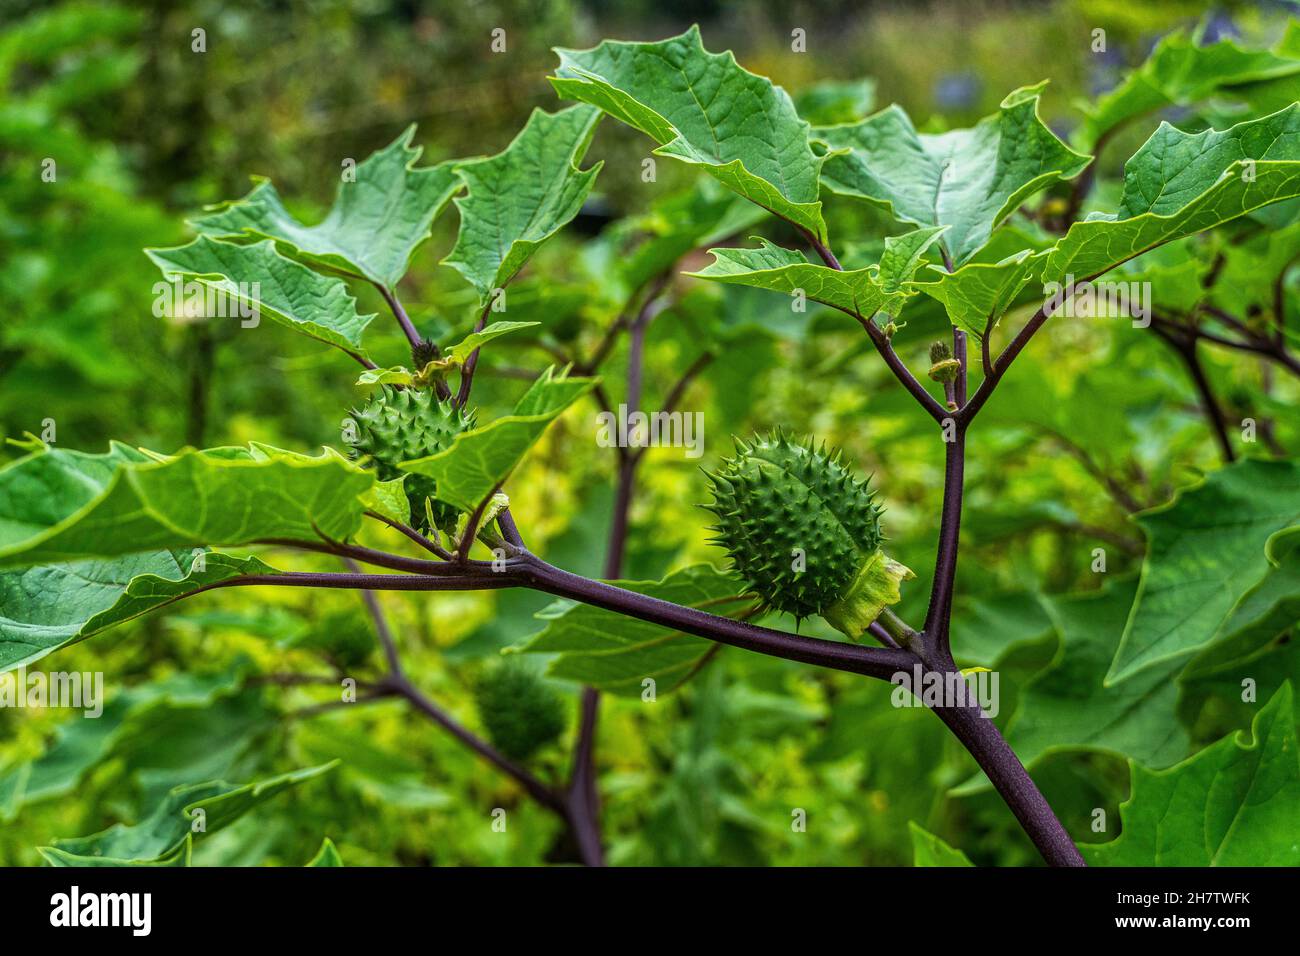 La pianta del torace comune, la Datura stramonium L., è una pianta fiorente appartenente alla famiglia delle Solanaceae. È una pianta altamente velenosa. Danimarca Foto Stock